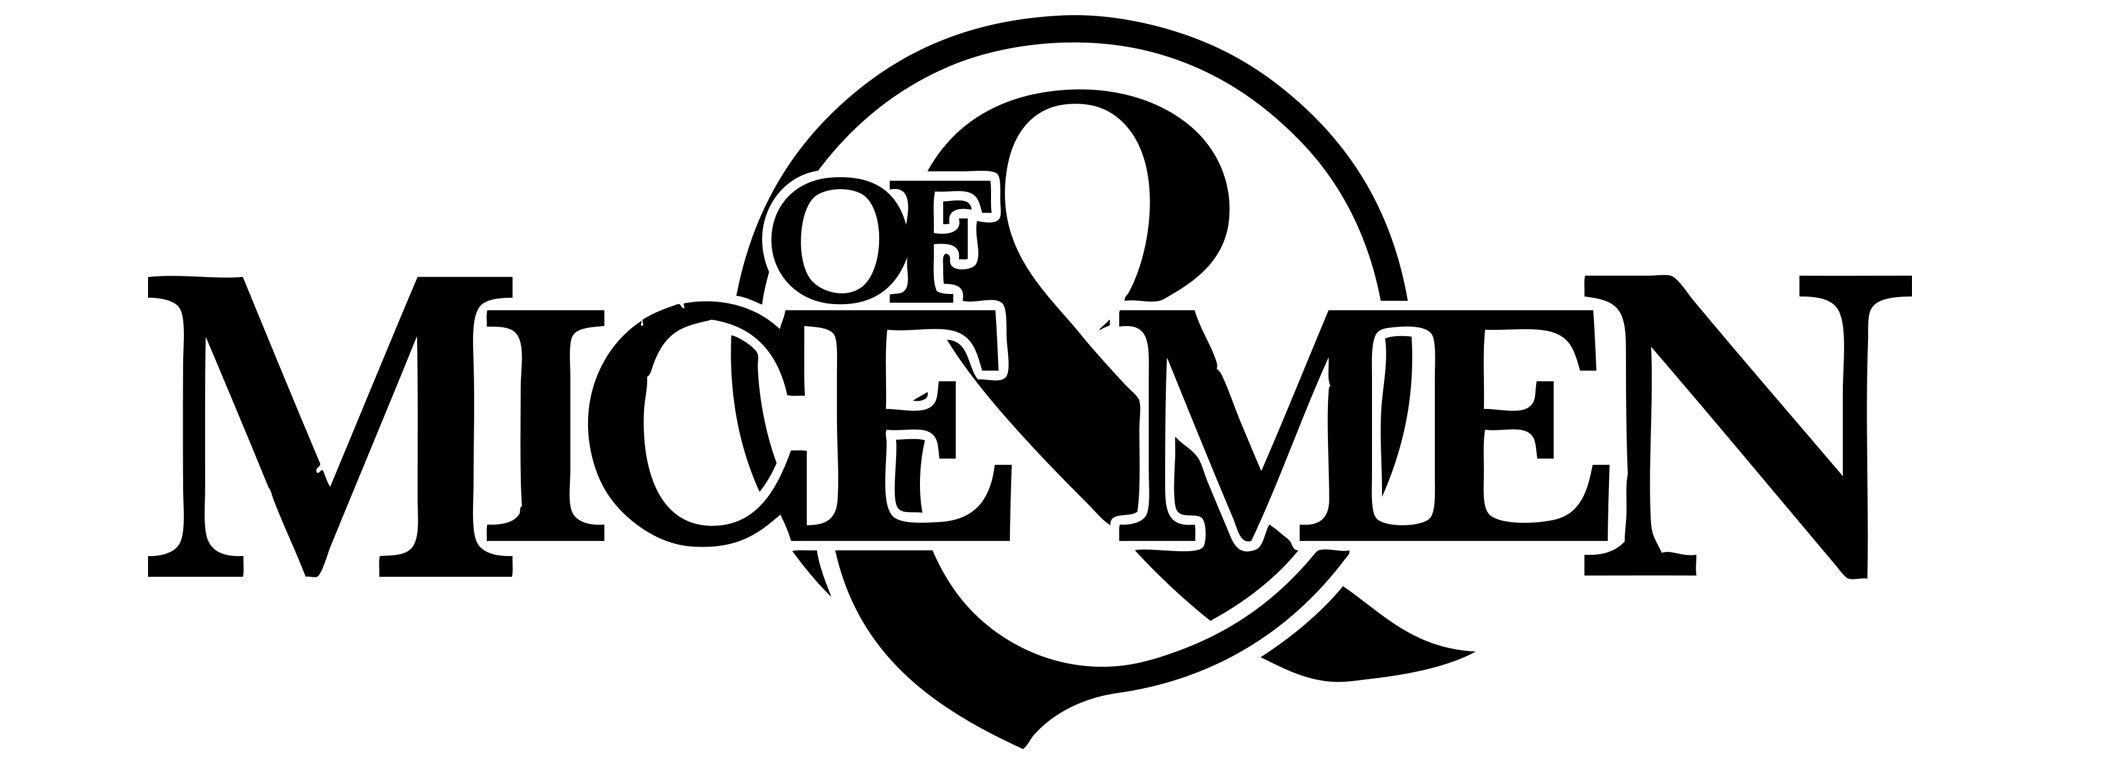 Mice Logo - File:Of mice & men logo.jpg - Wikimedia Commons